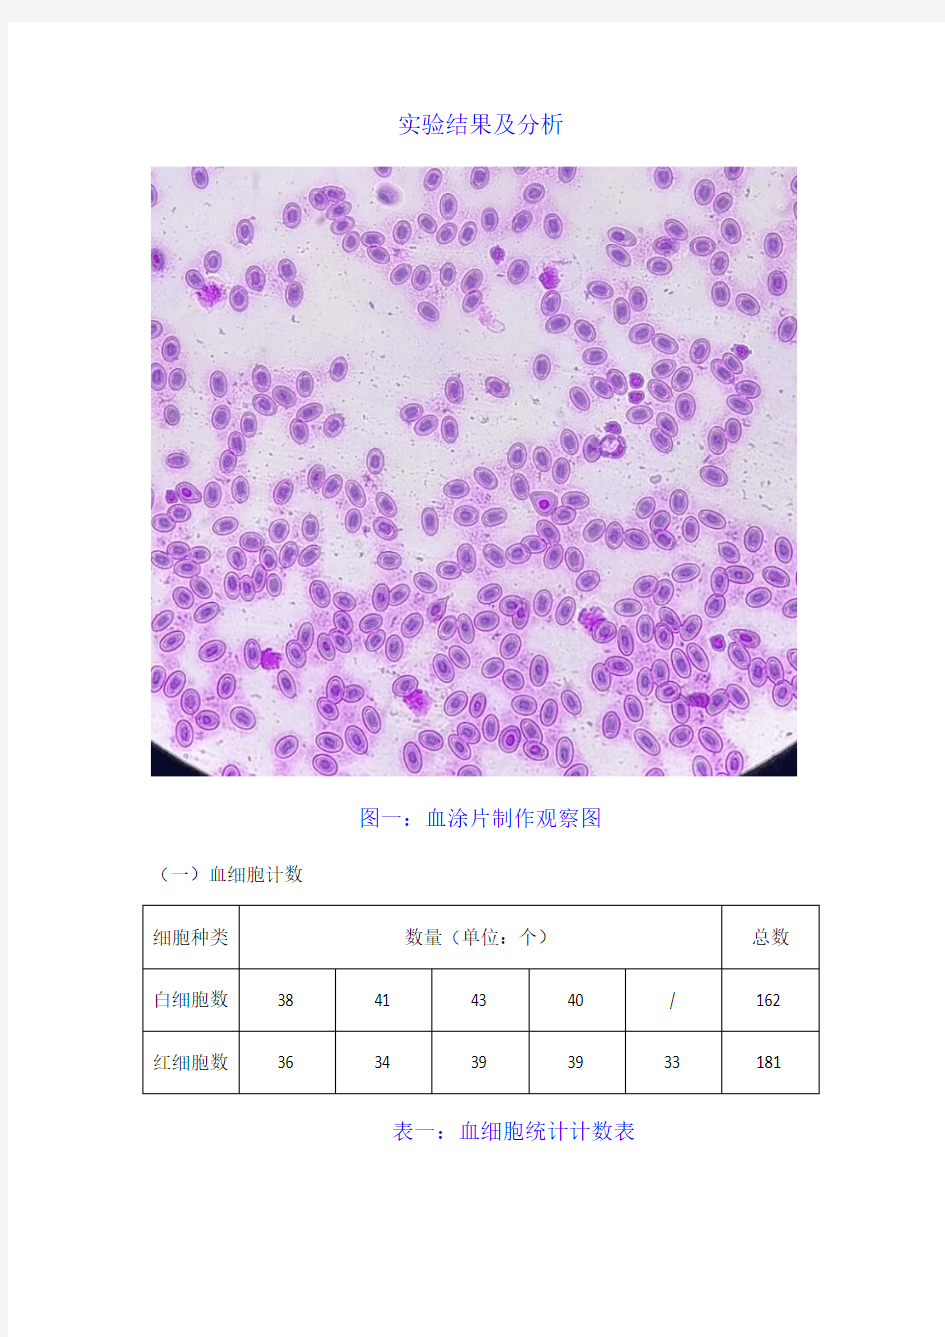 血细胞计数实验报告